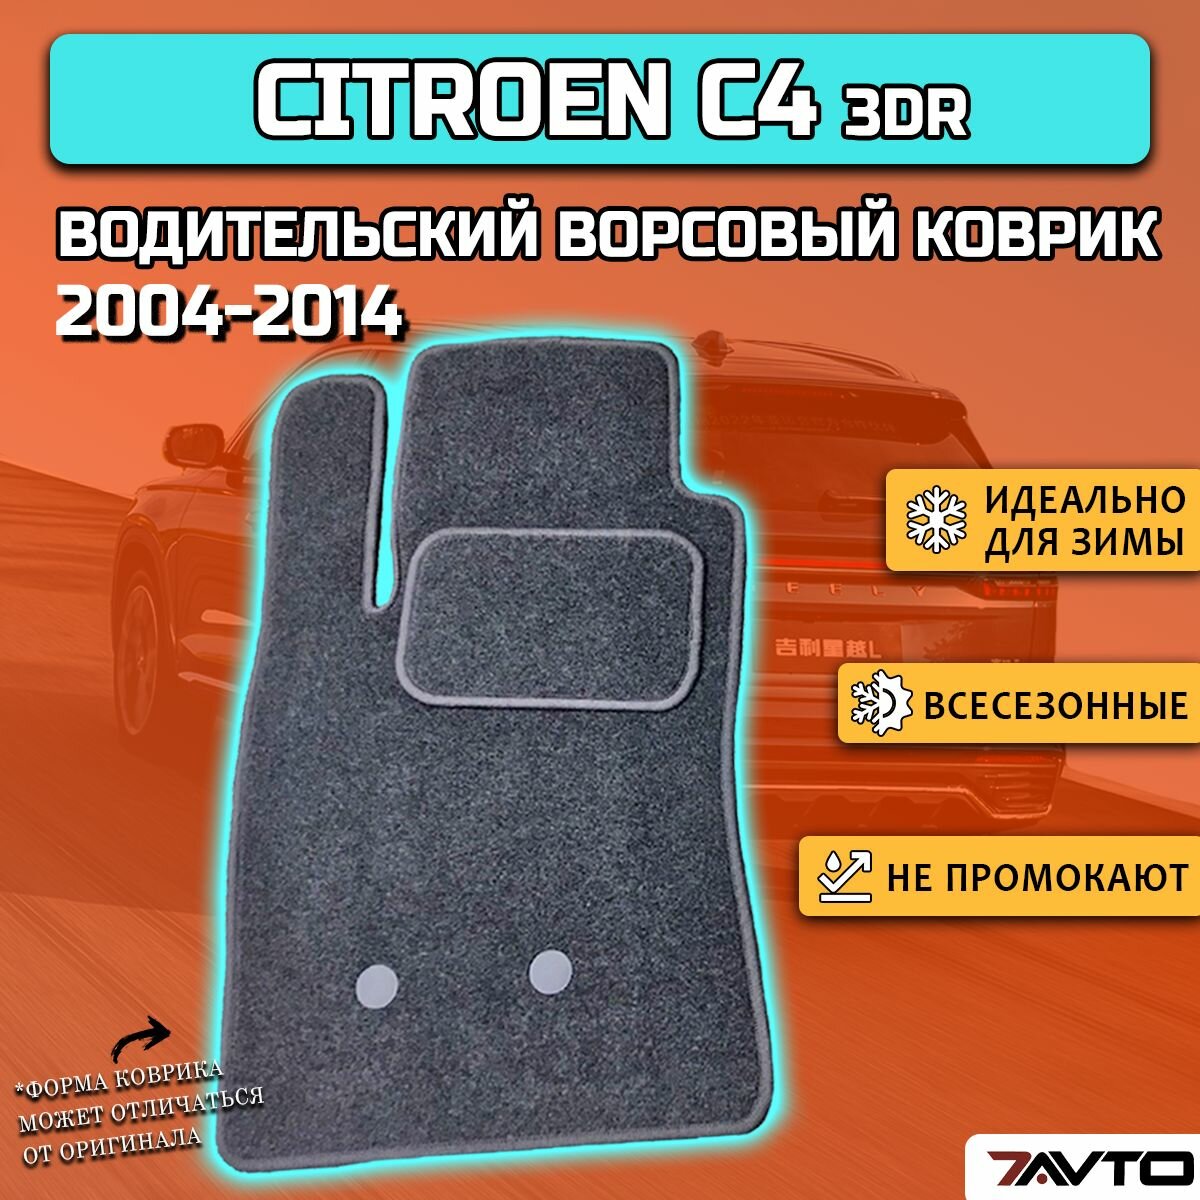 Водительский ворсовый коврик ECO на Citroen C4 I 2004-2014 3dr / Ситроен Ц4